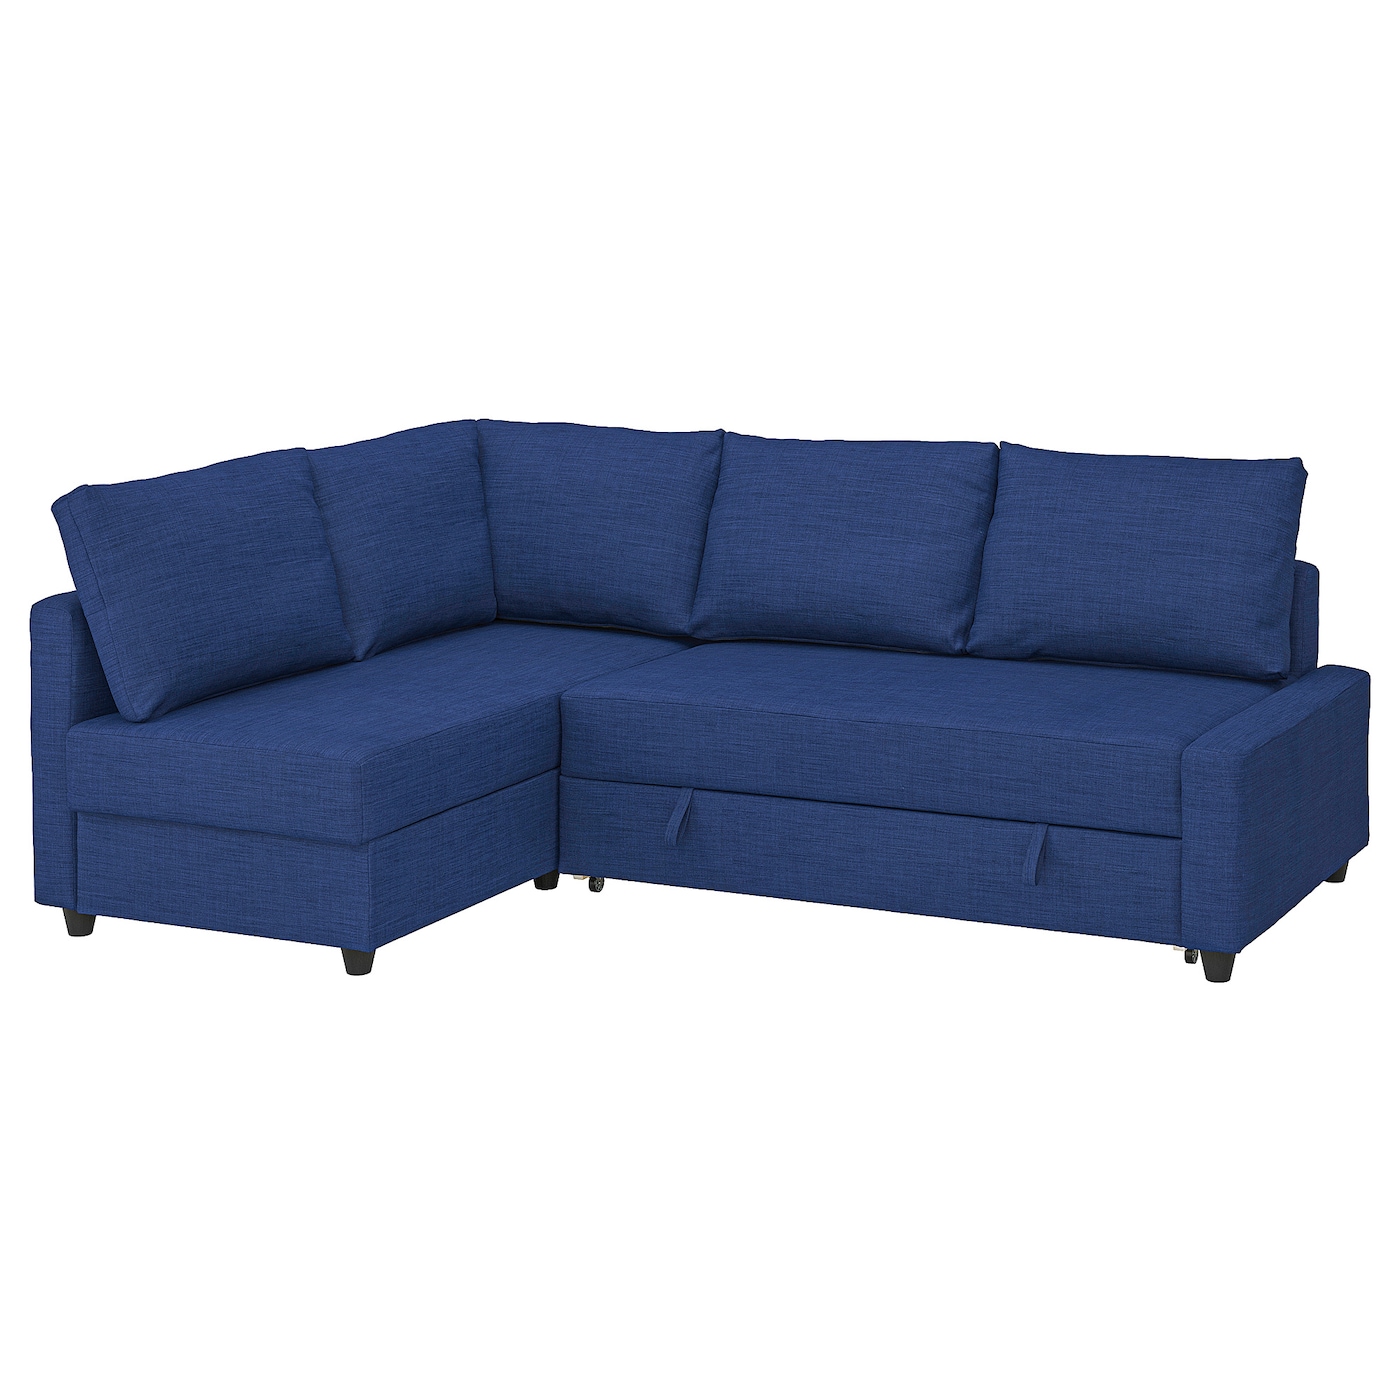 ФРИХЕТЭН Угловой диван-кровать + место для хранения, дополнительные подушки для спины в комплекте/Скифтебо синий FRIHETEN IKEA